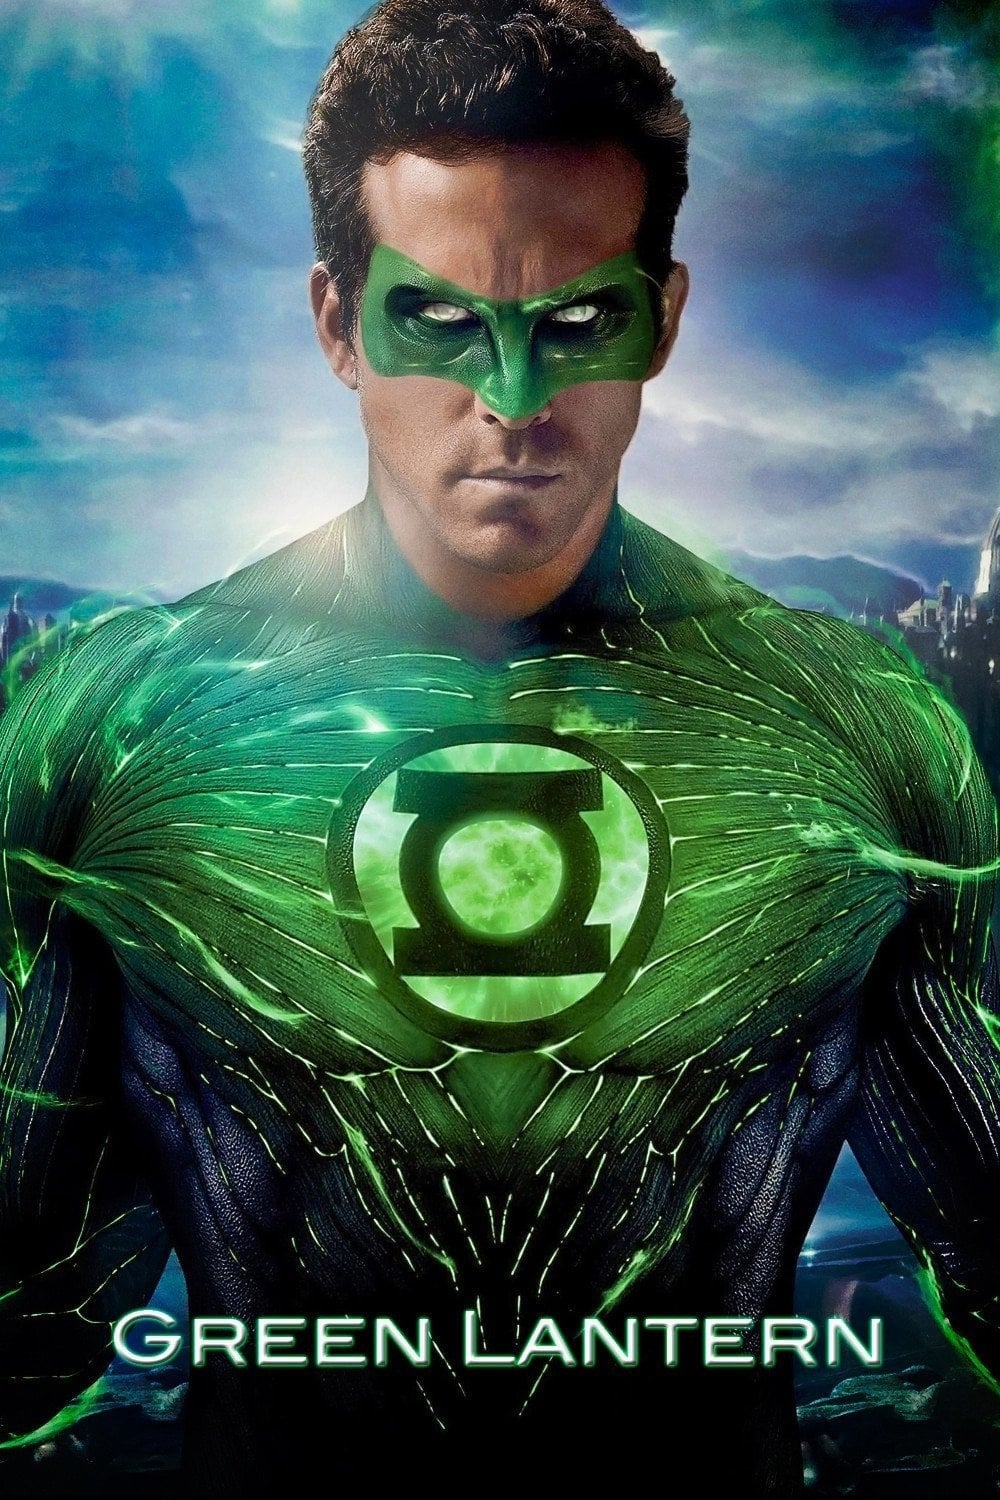 Lanterna Verde (2011)